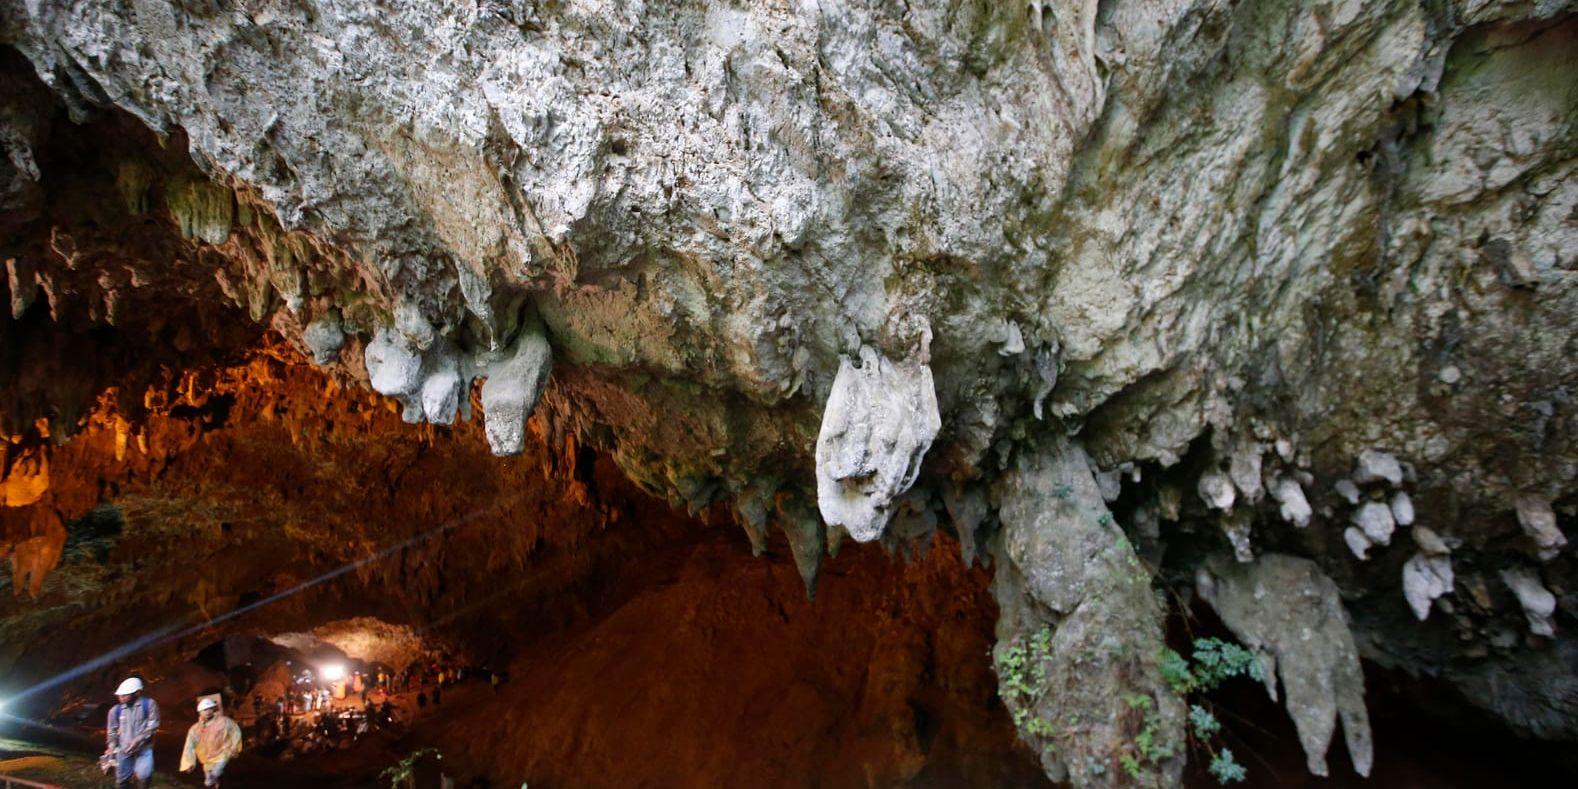 Tham Luang-grottorna i Thailand, där de tolv pojkarna och deras fotbollstränare var instängda, blir museum. Arkivbild.